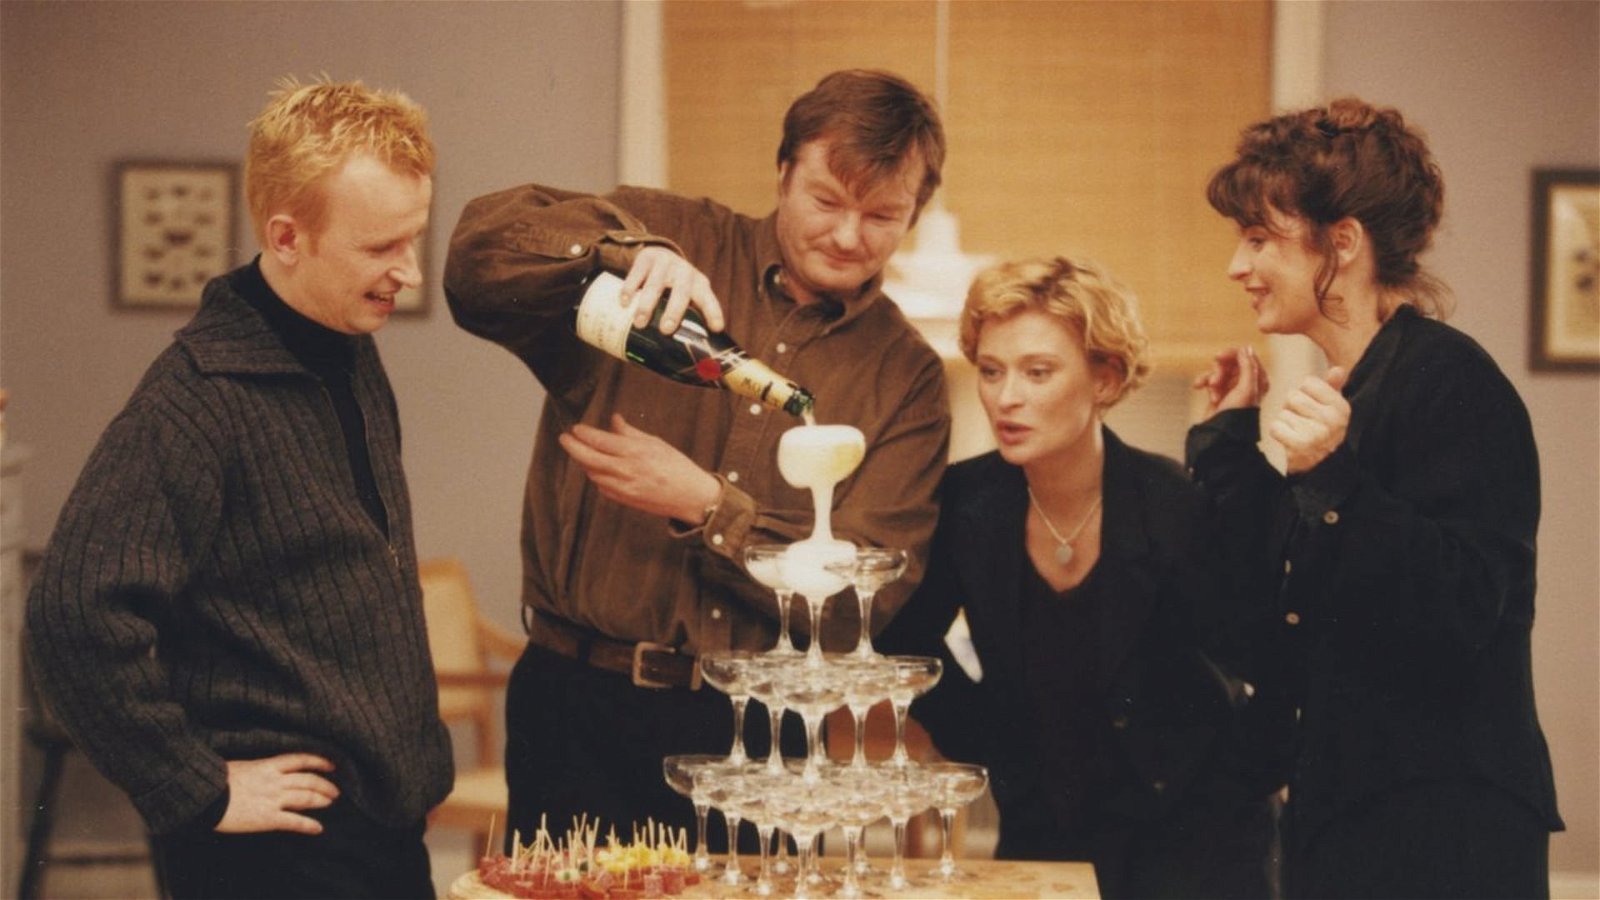 Ogifta par: ... en film som skiljer sig (1997) – svensk julfilm